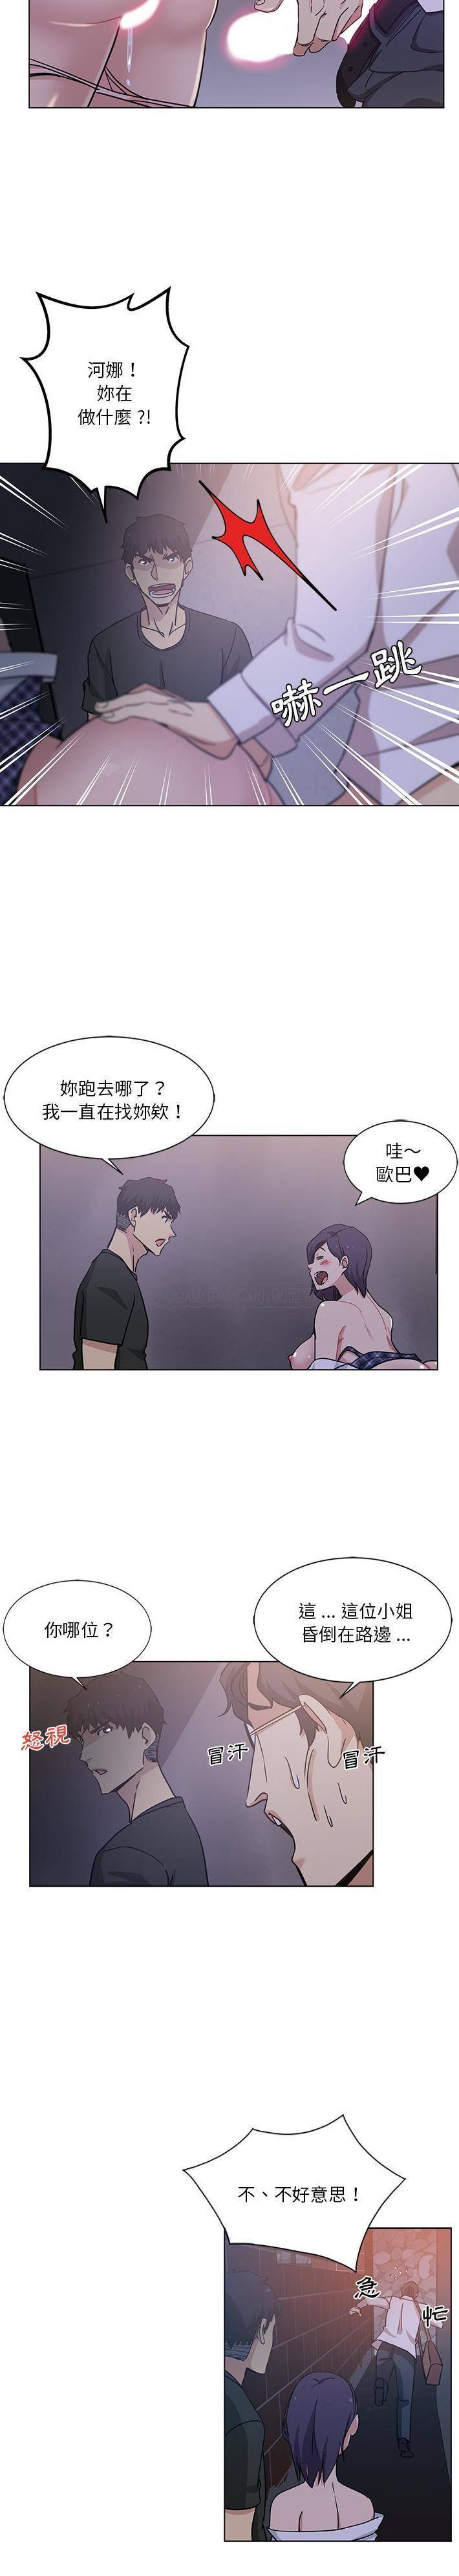 韩国污漫画 危險純友誼 第4话 8